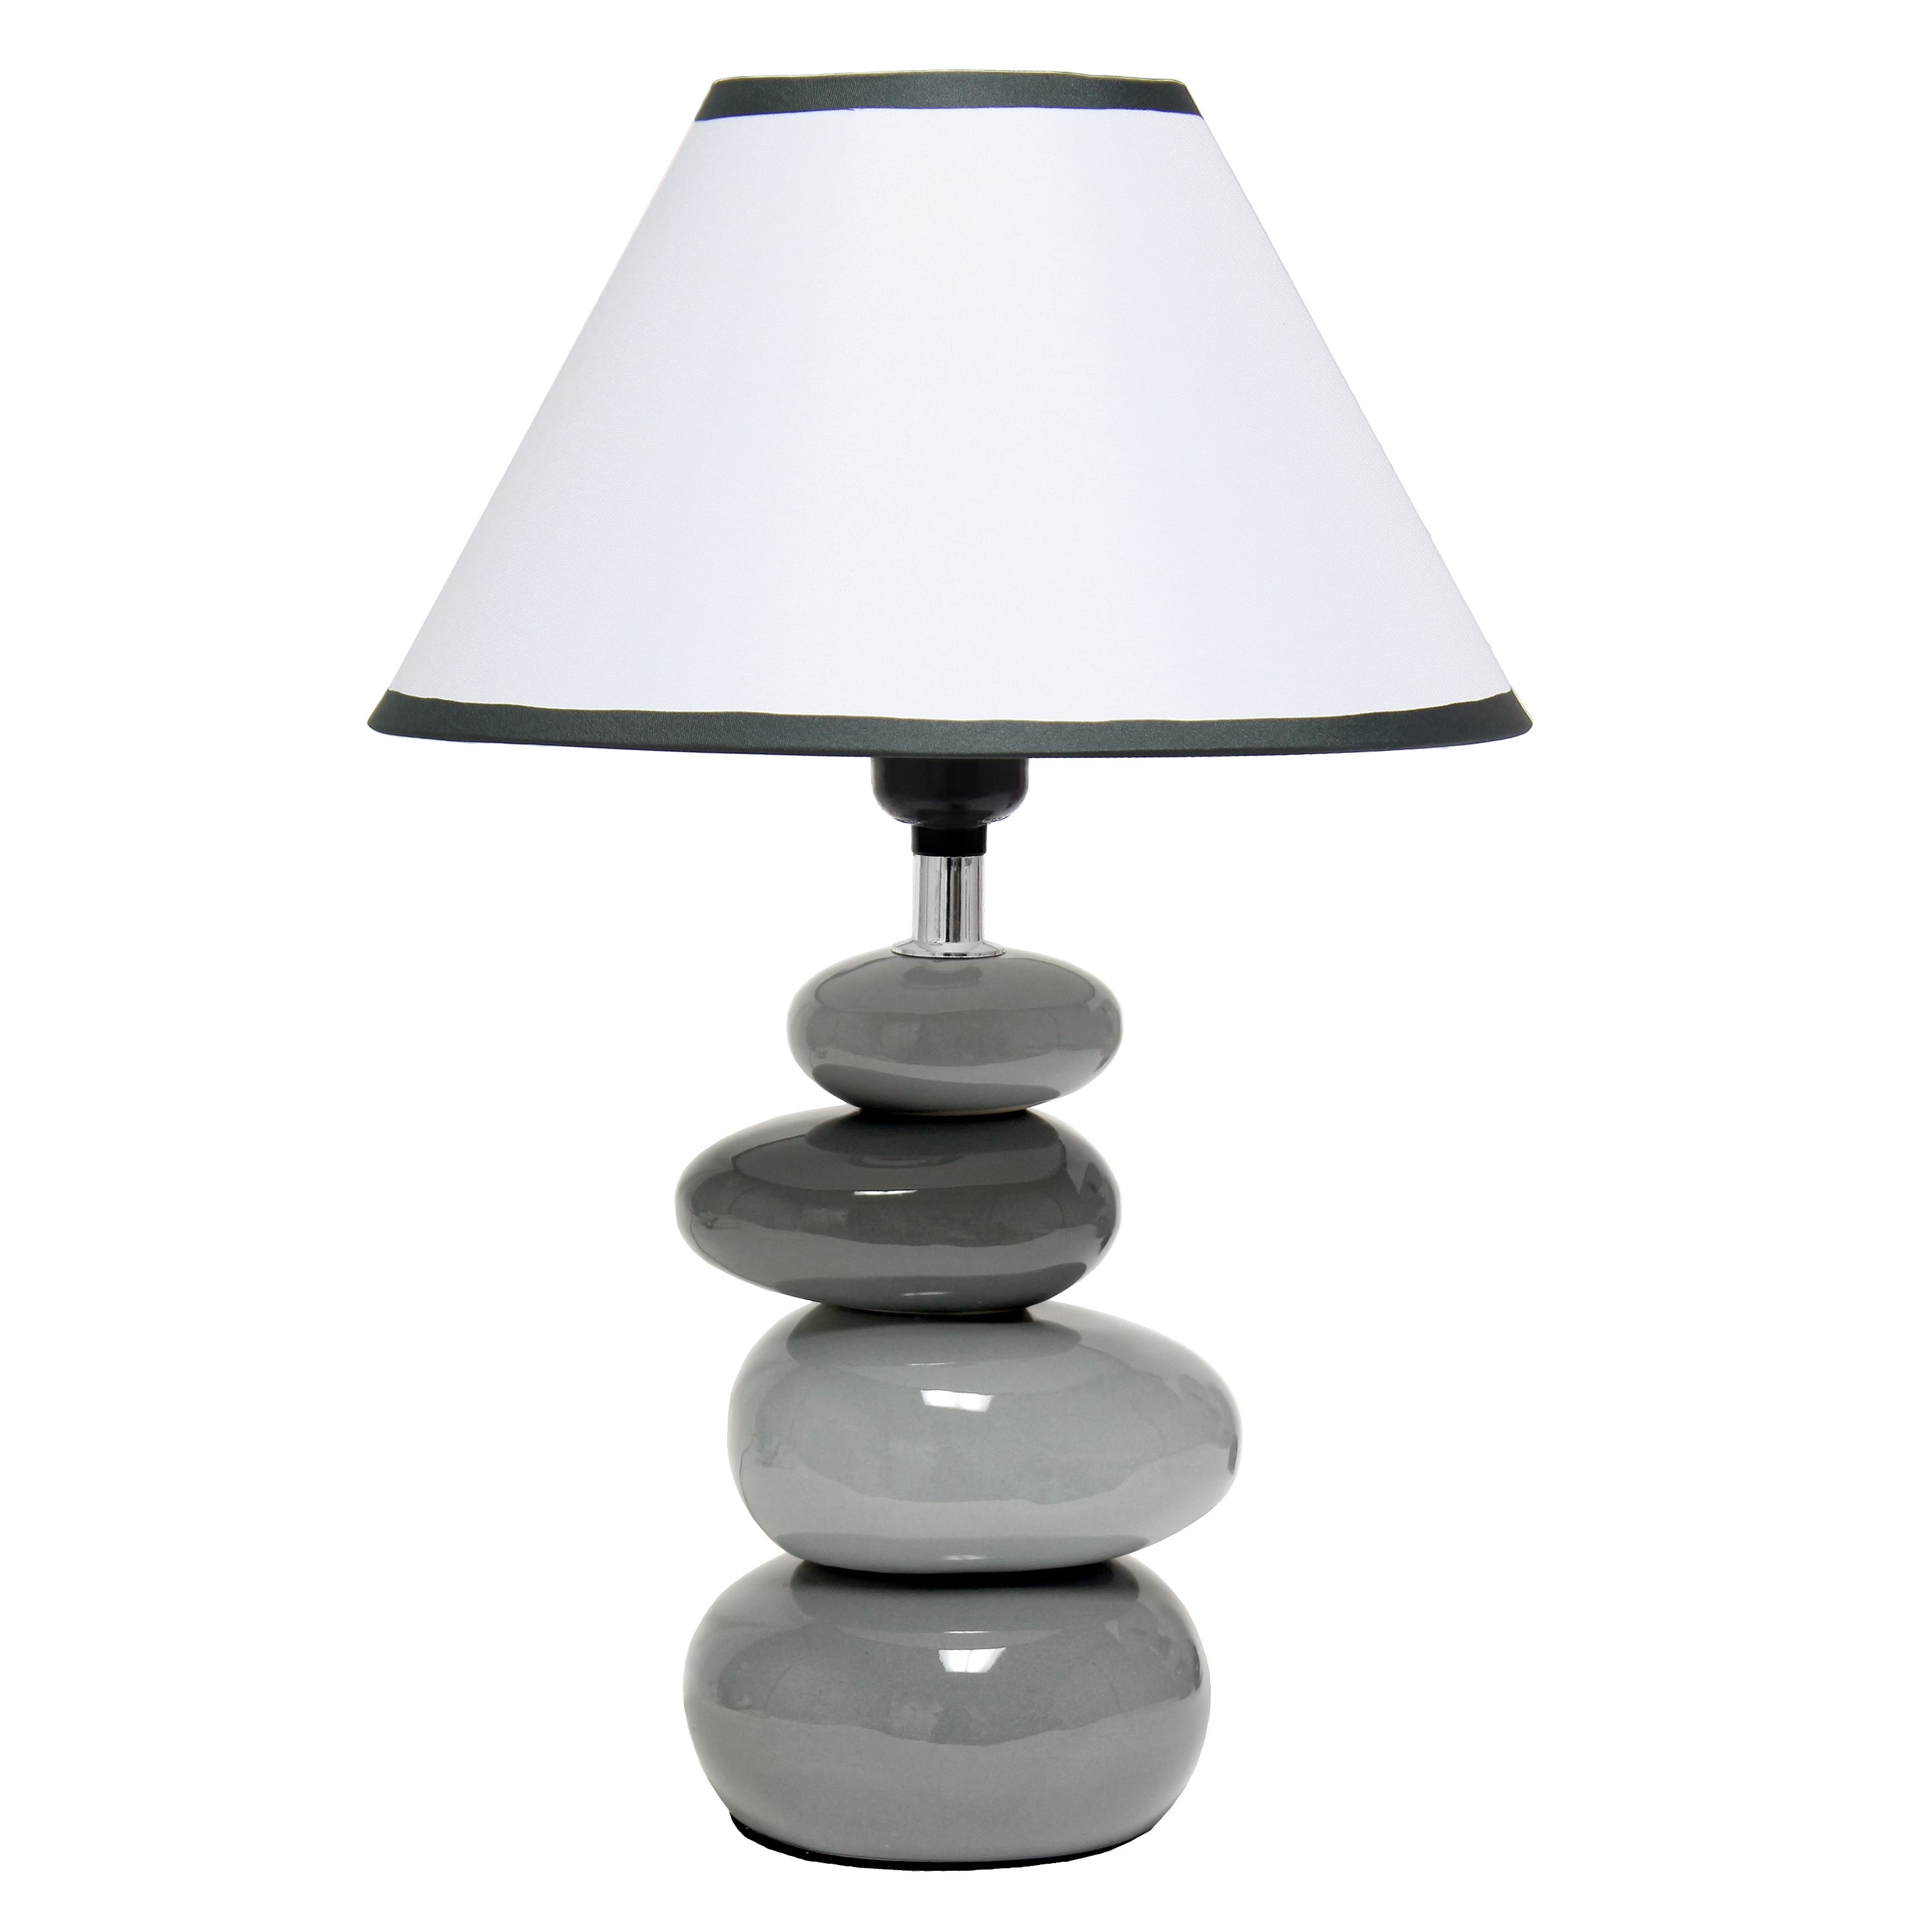 Simple Designs 17.5" Ceramic Stone Table Lamp